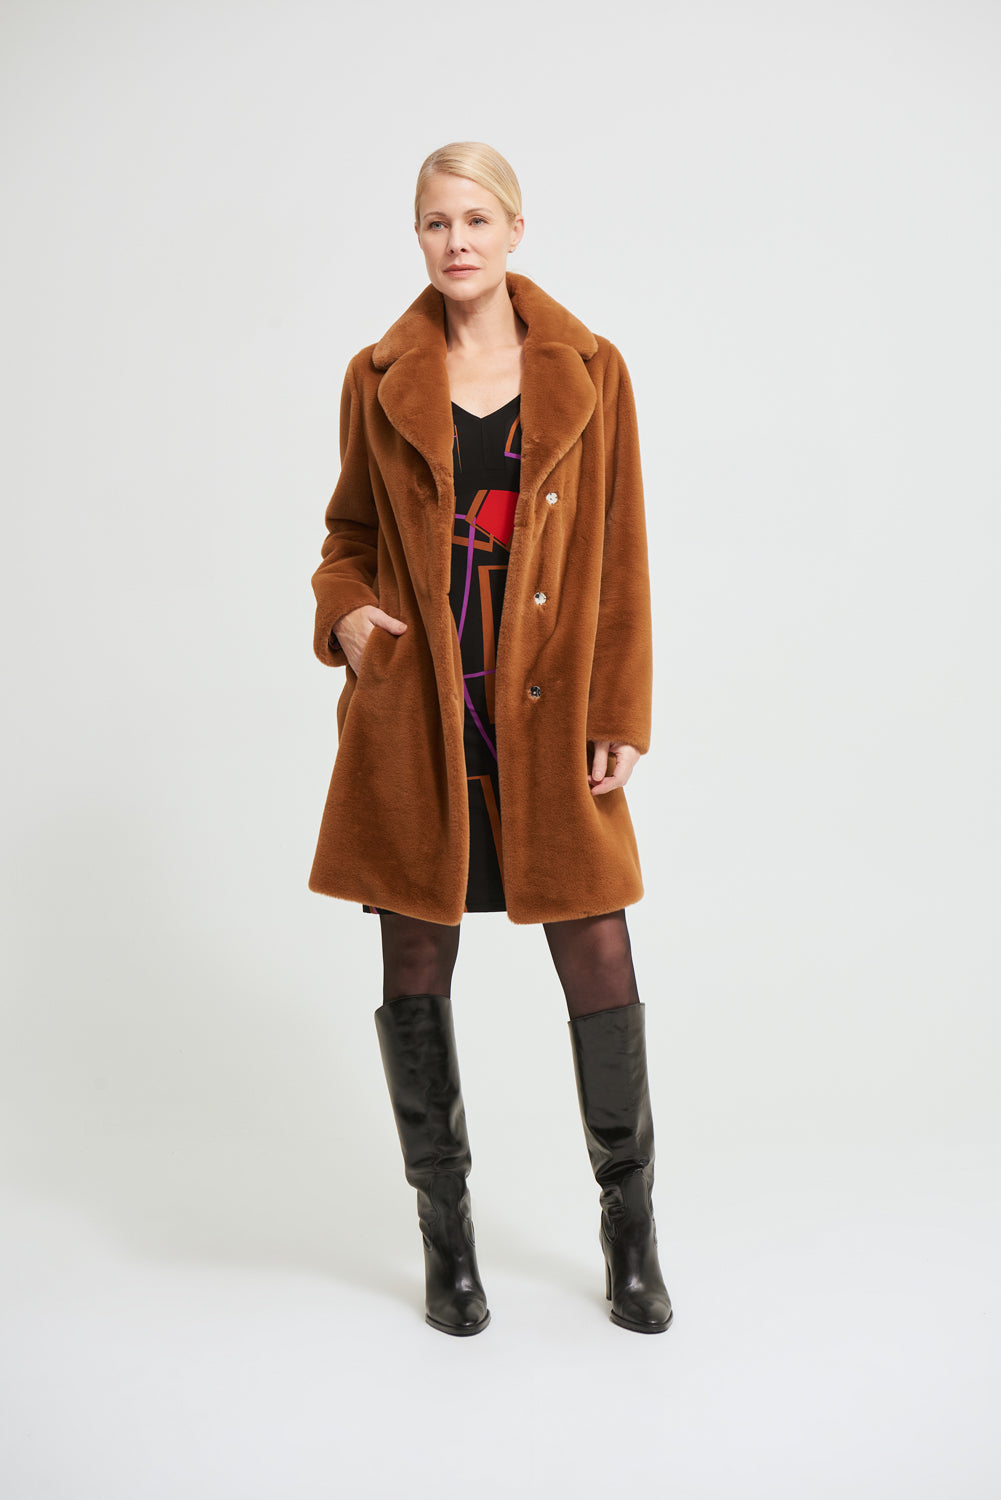 Joseph Ribkoff Rust Faux Fur Coat Style 213910